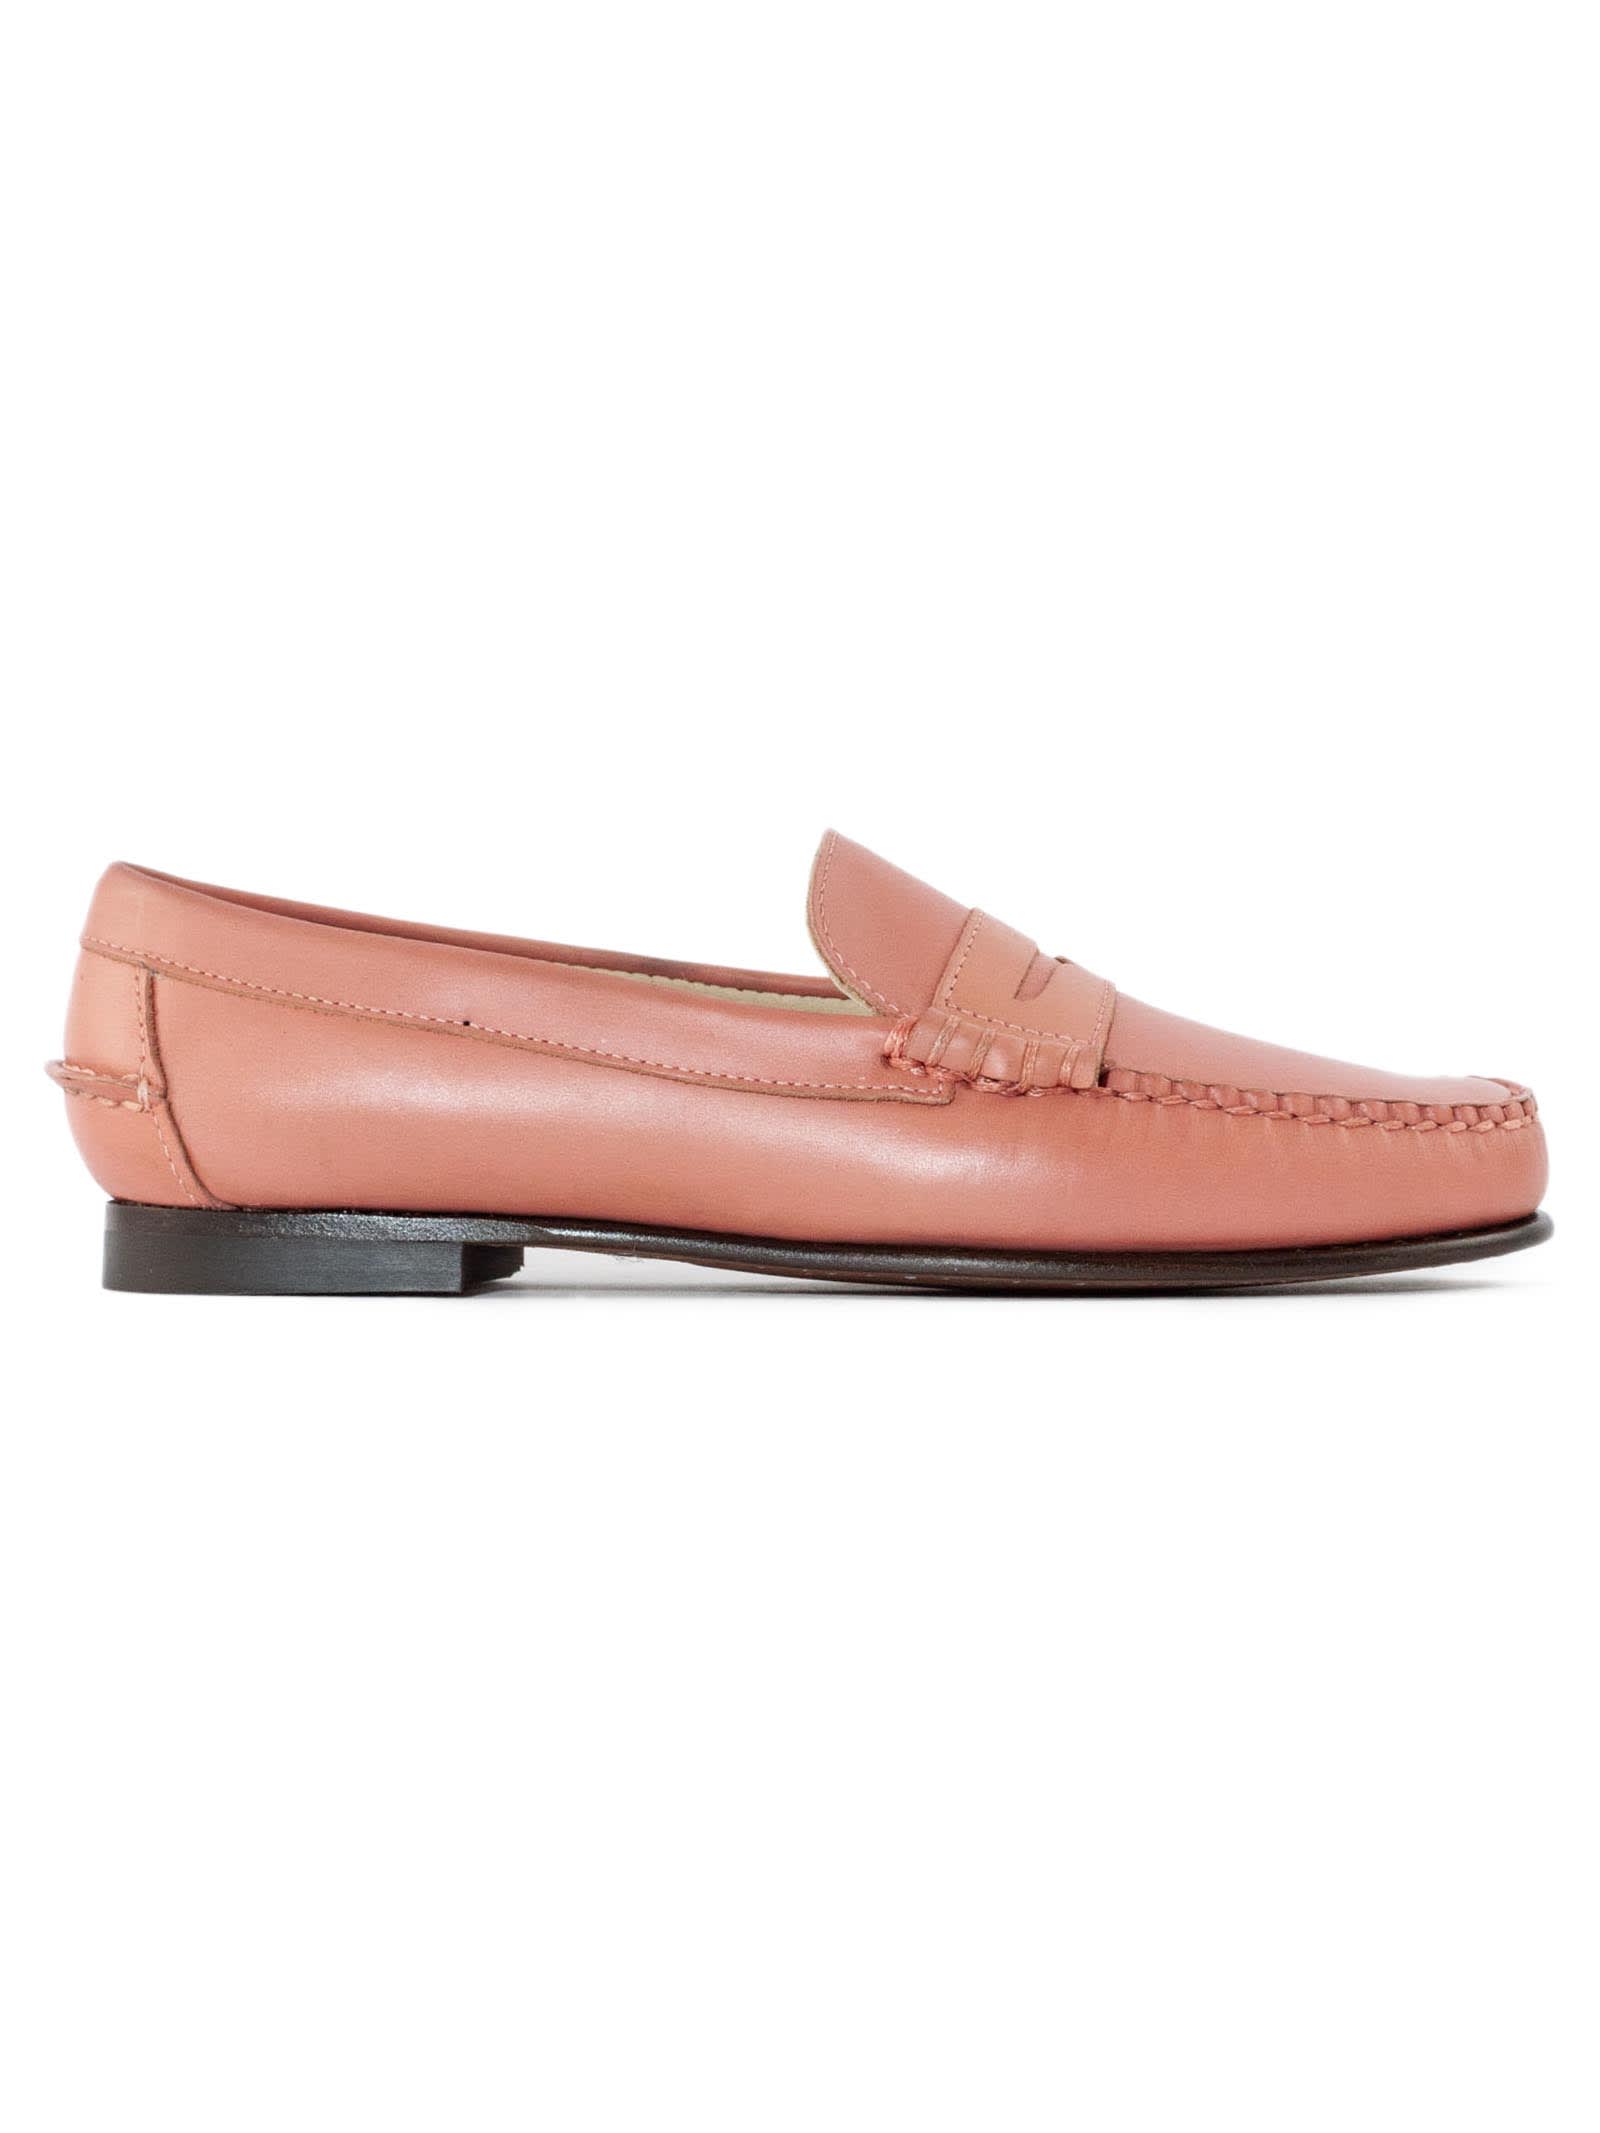 Shop Sebago Pink Smooth Grain Leather Loafer